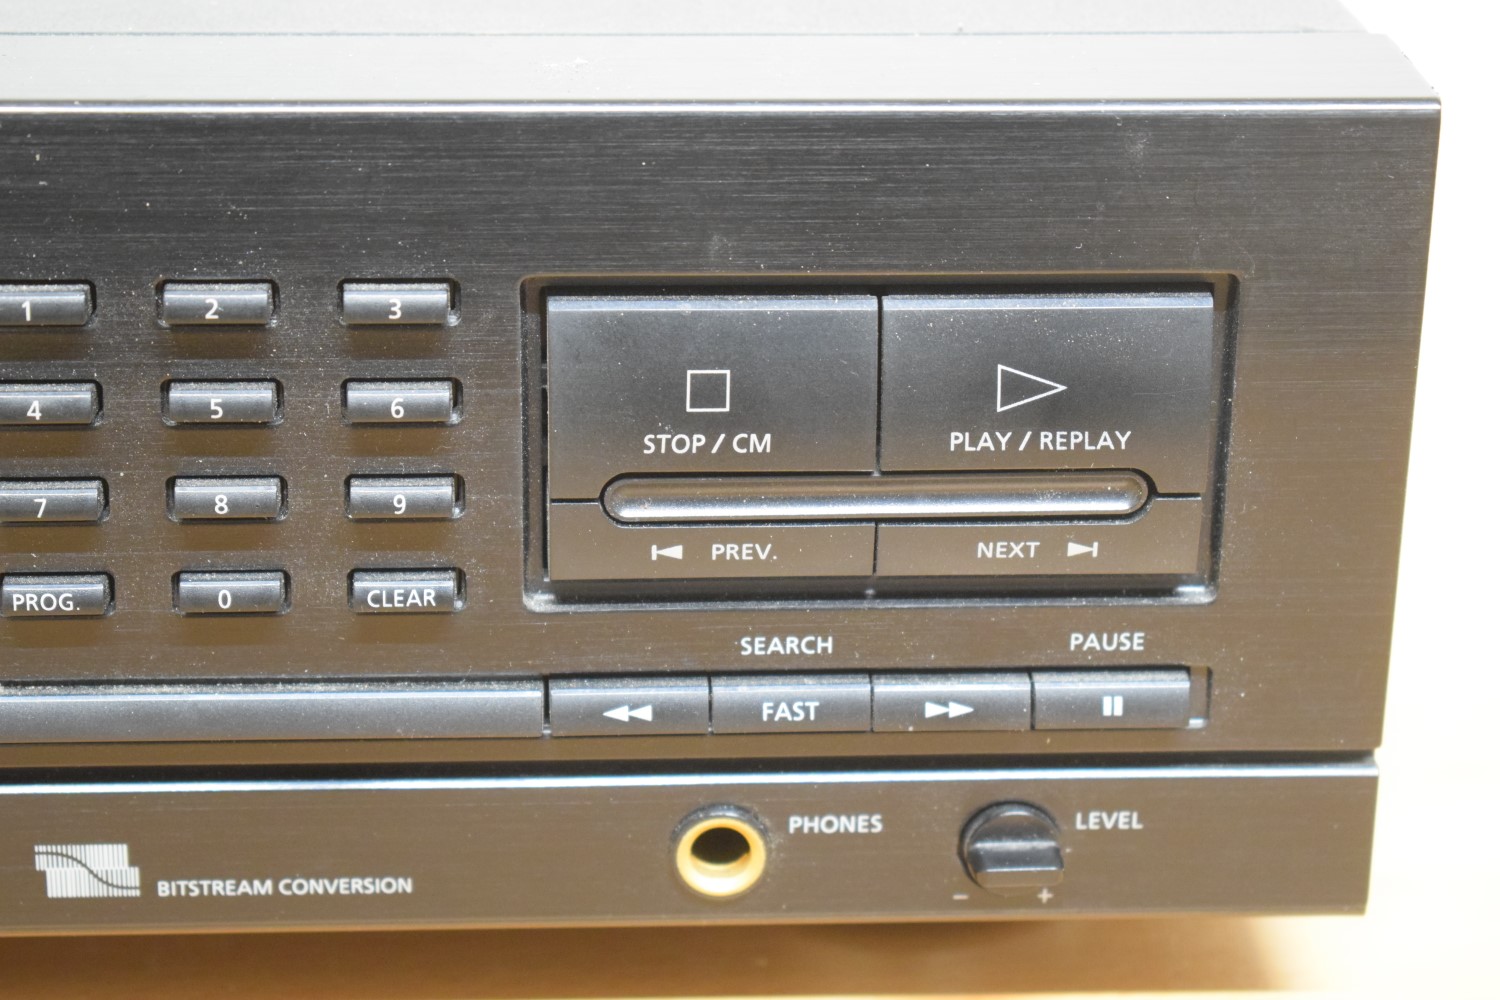 Philips CD730 CD-Spieler